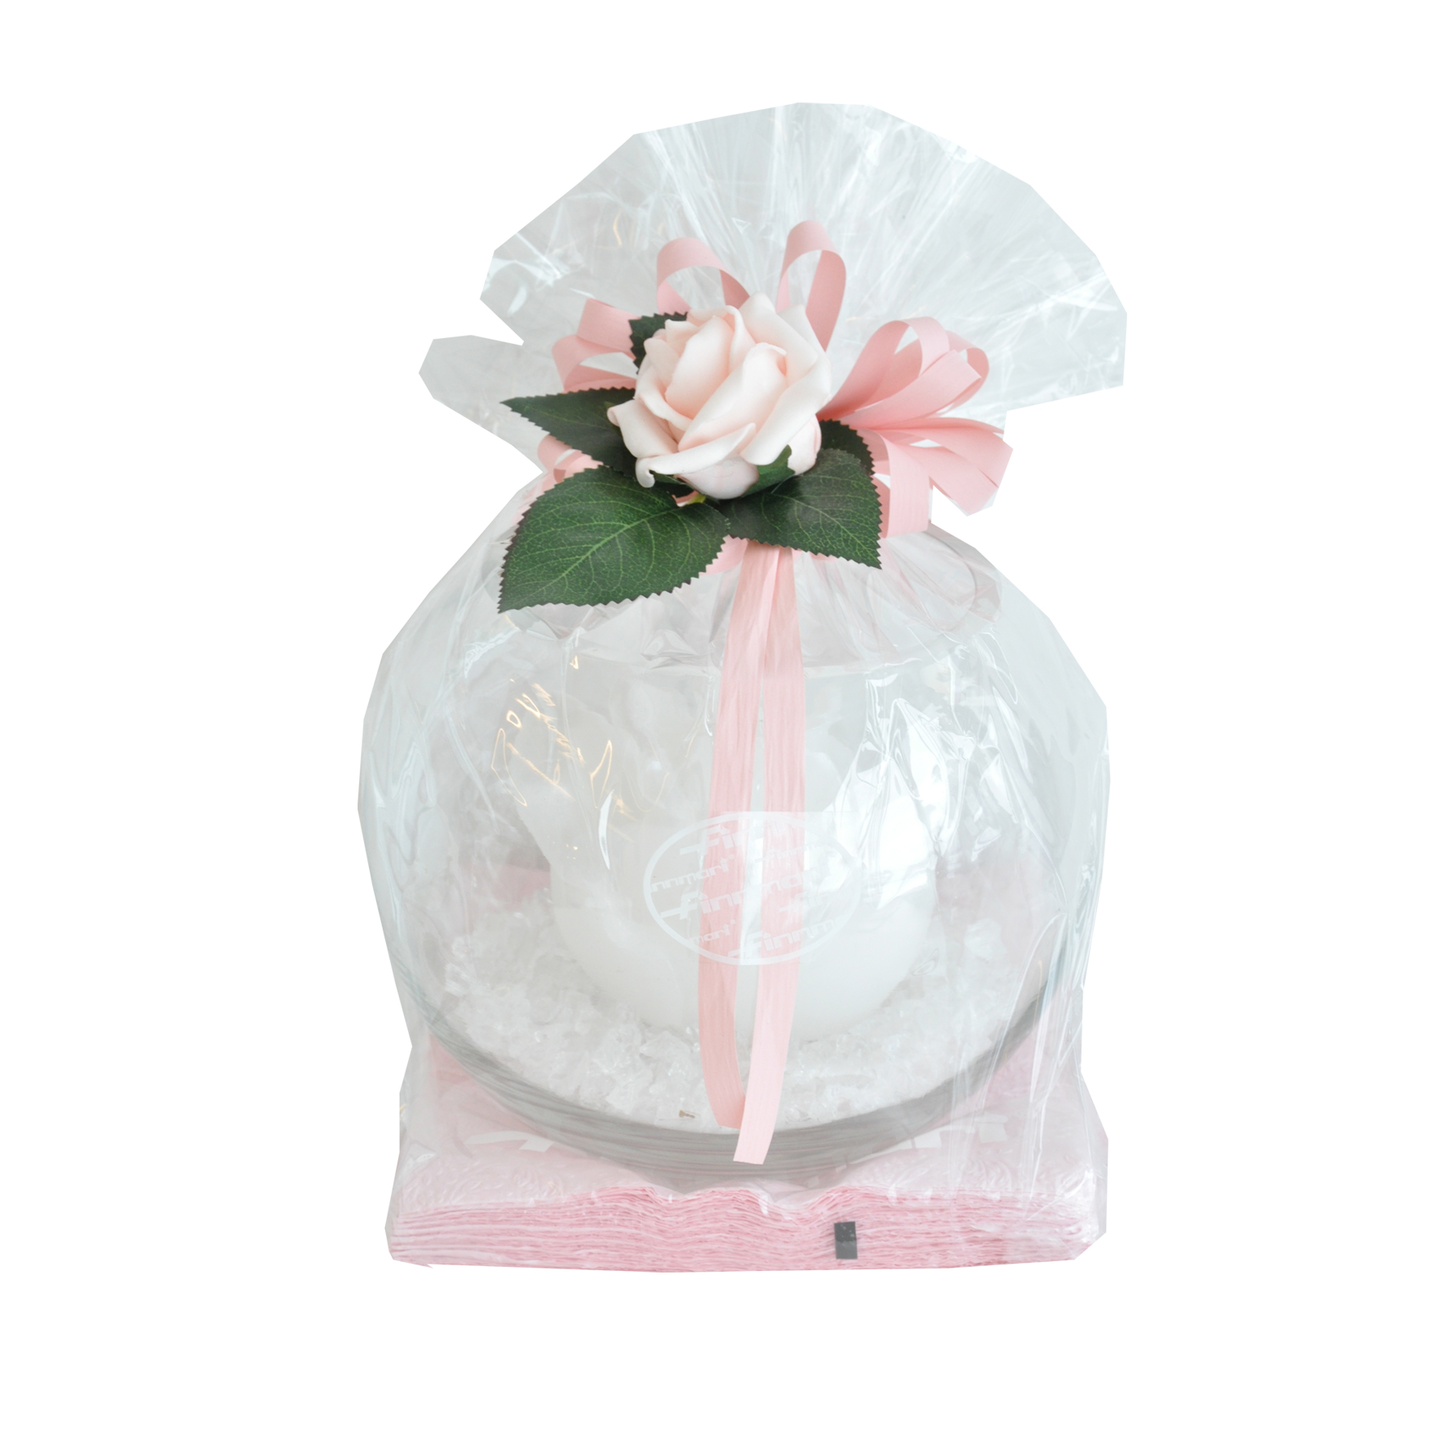 Finnmari kynttilälahjapakkaus pallomaljakko, jäämurske,valk.ruusukynttilä, ruusu+lehdet